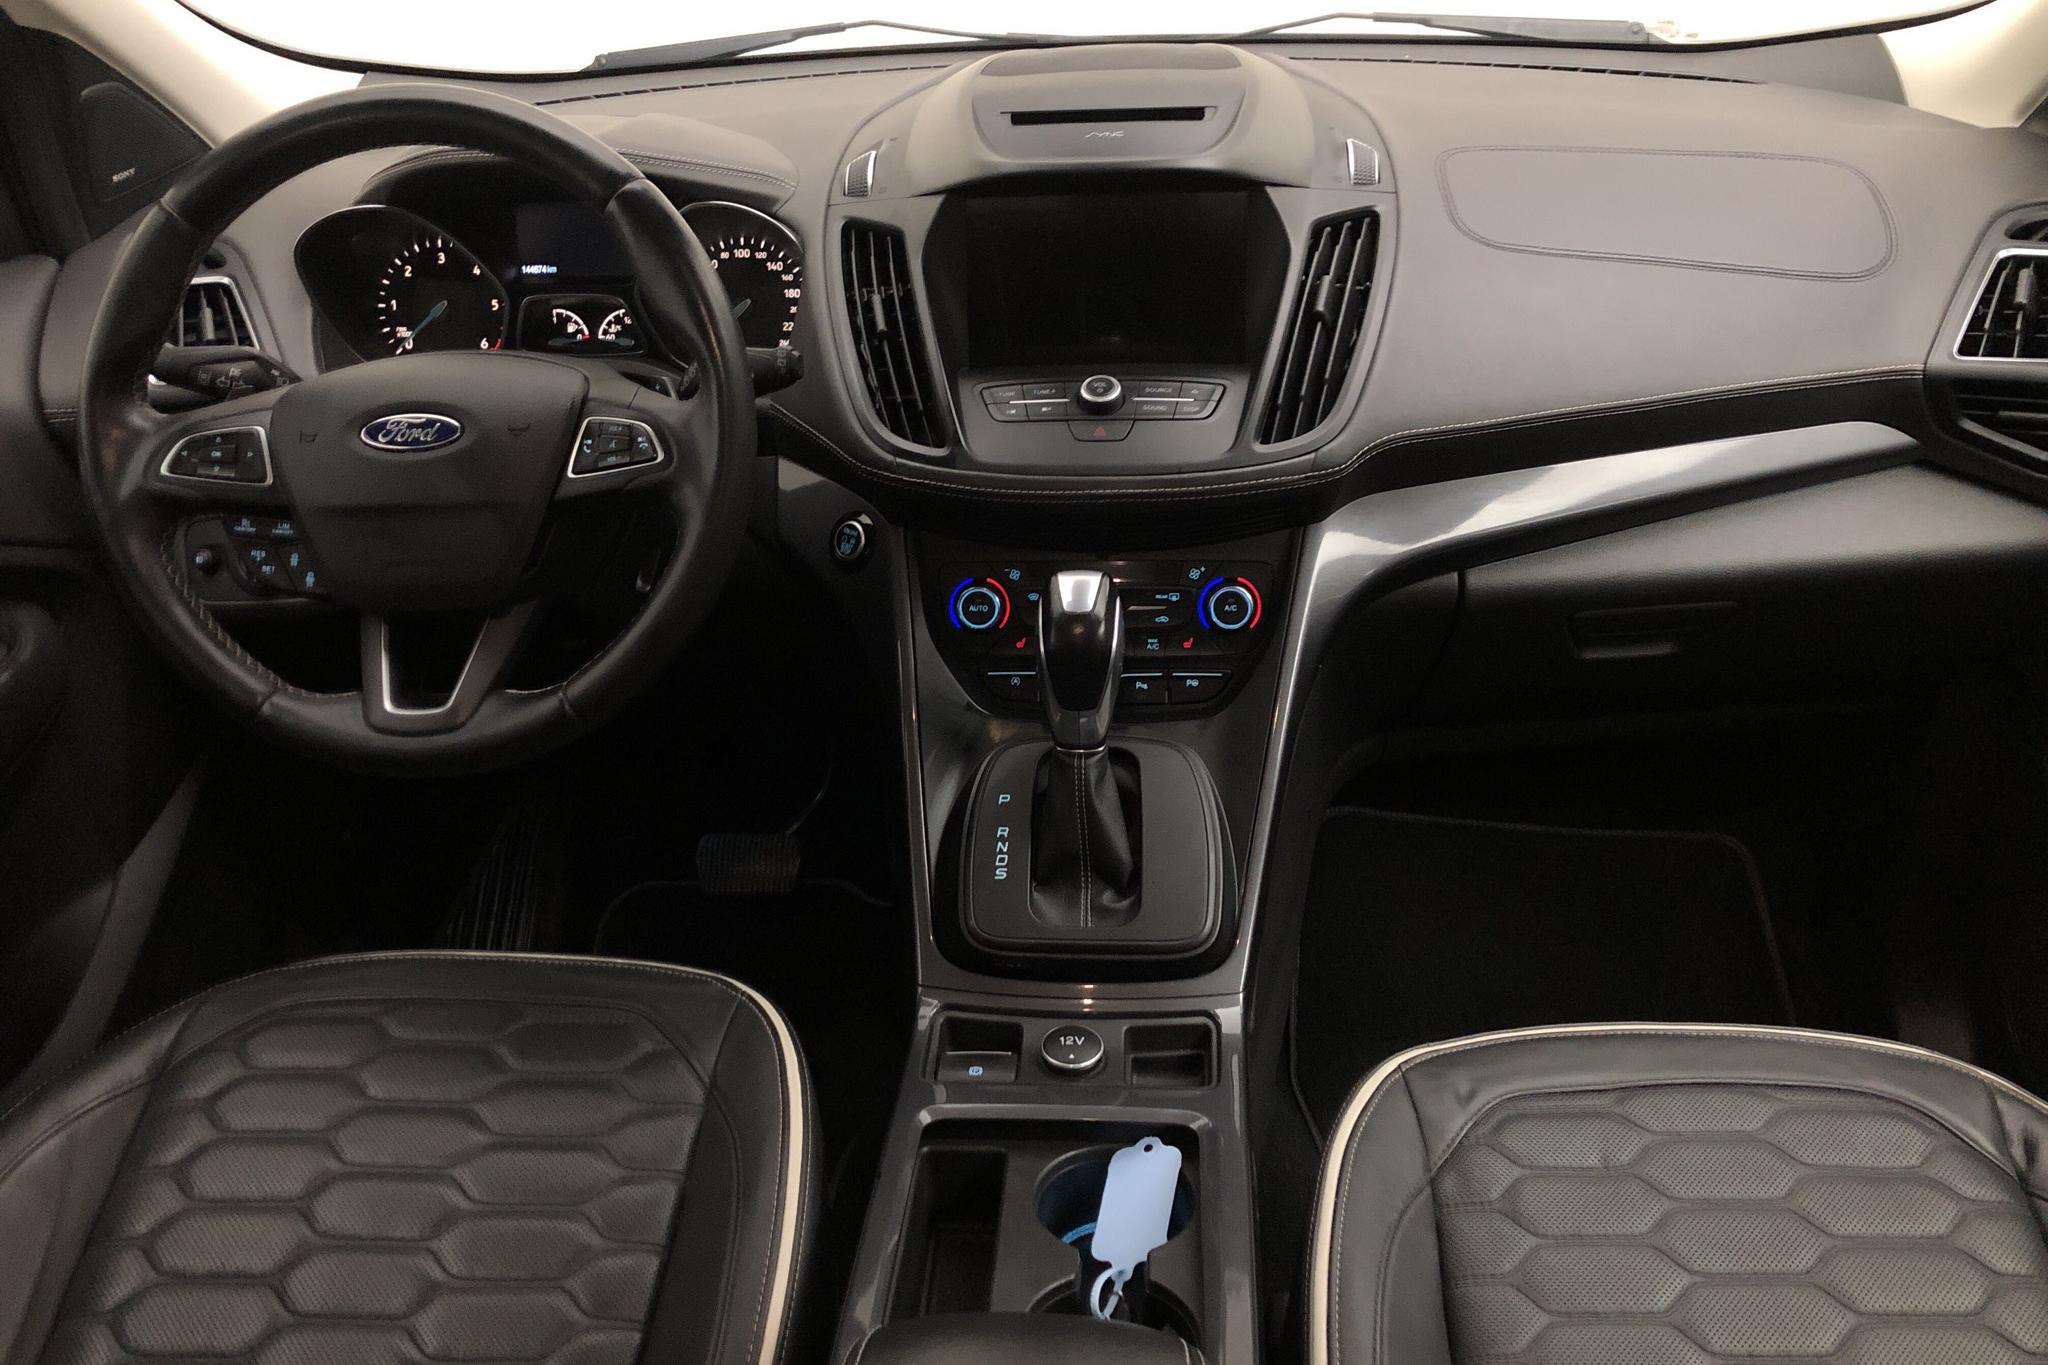 Ford Kuga 2.0 TDCi AWD (180hk) - 144 670 km - Automatic - white - 2017